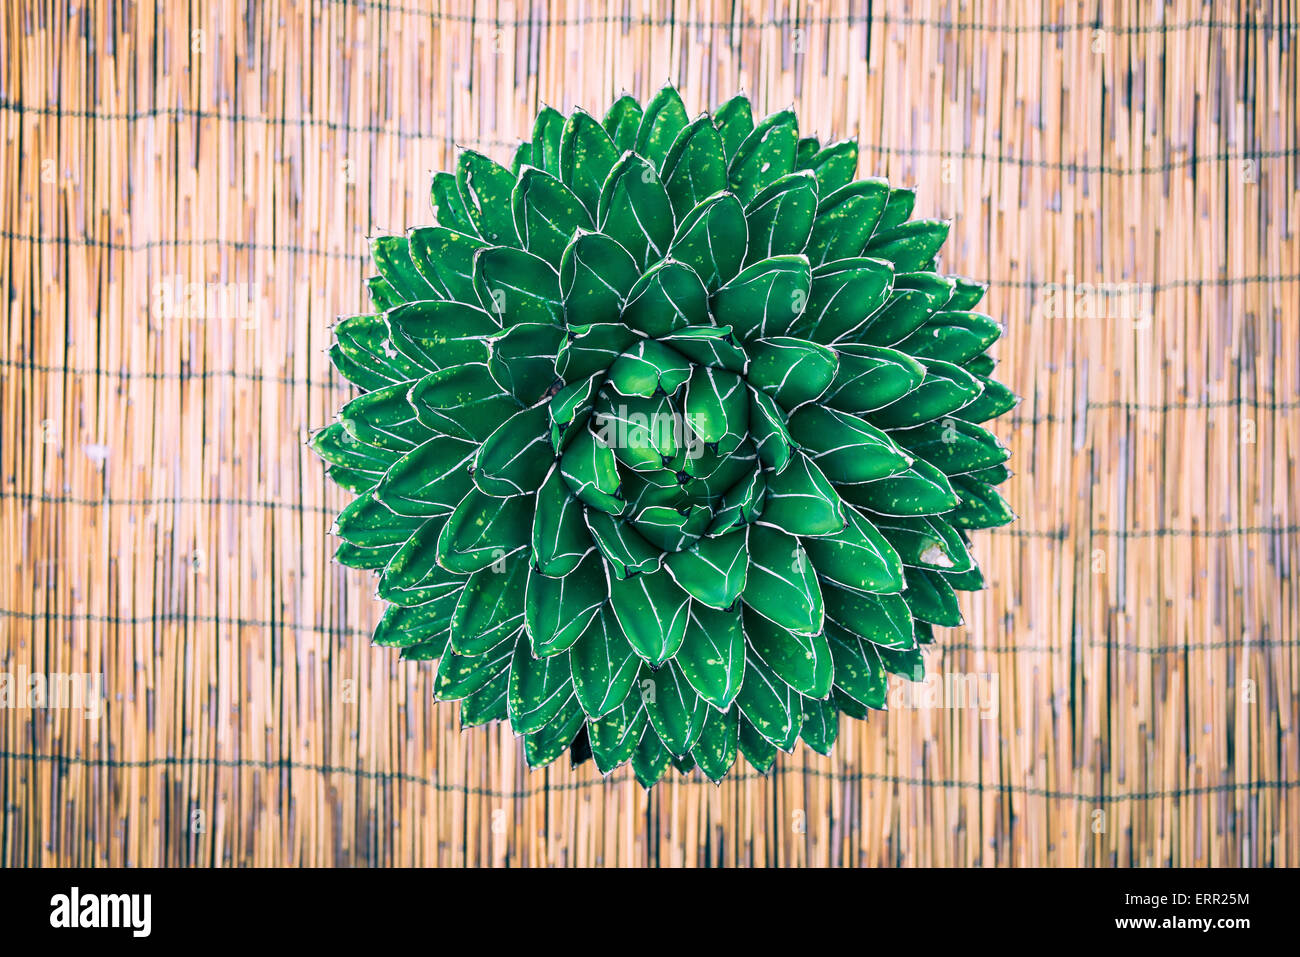 Una planta grasa desde el lado superior, revelando un hermoso efecto de textura Foto de stock